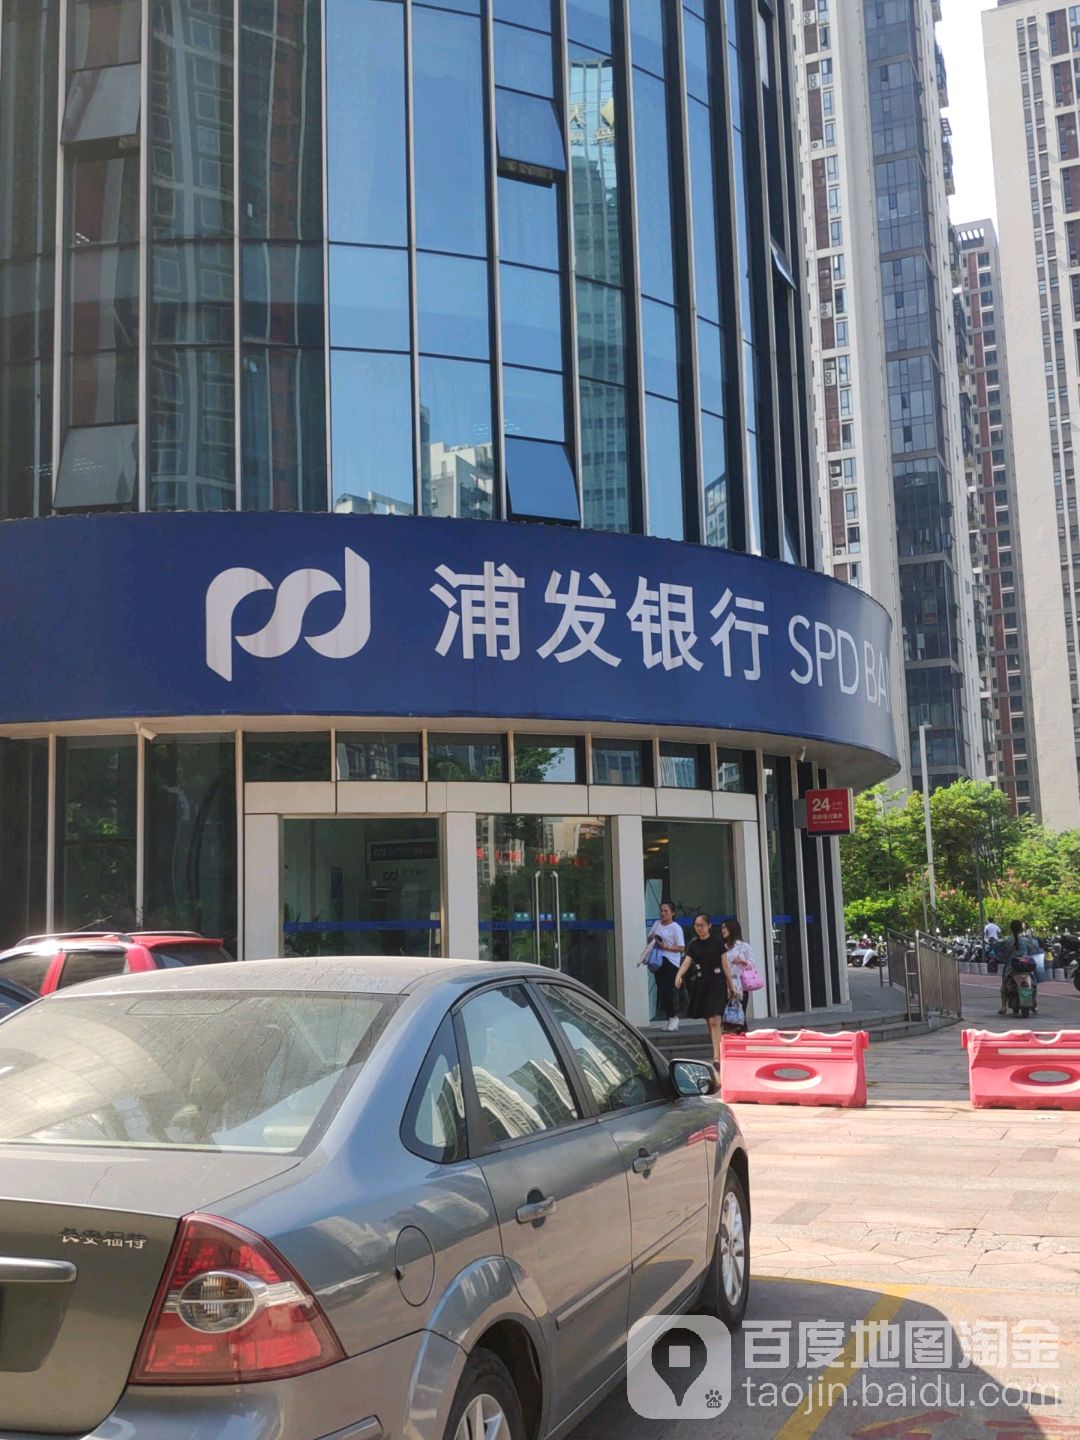 上海浦东发展银行24小时自助银行((晨华路)